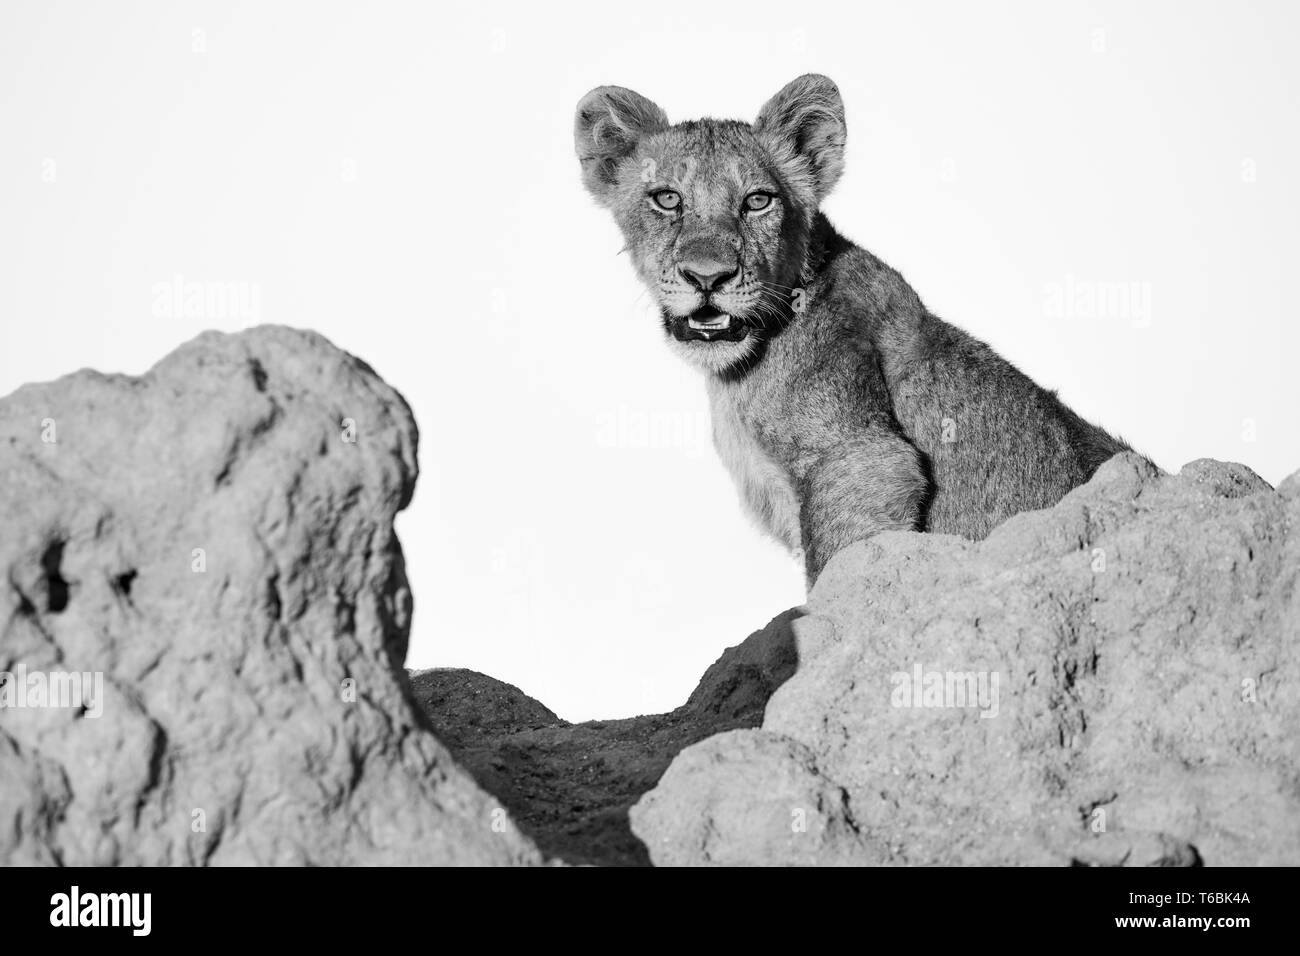 Ein lion Cub, Panther Leo, sitzt auf einem termitenhügel Damm, direkten Blick, den Mund offen, in Schwarz und Weiß Stockfoto